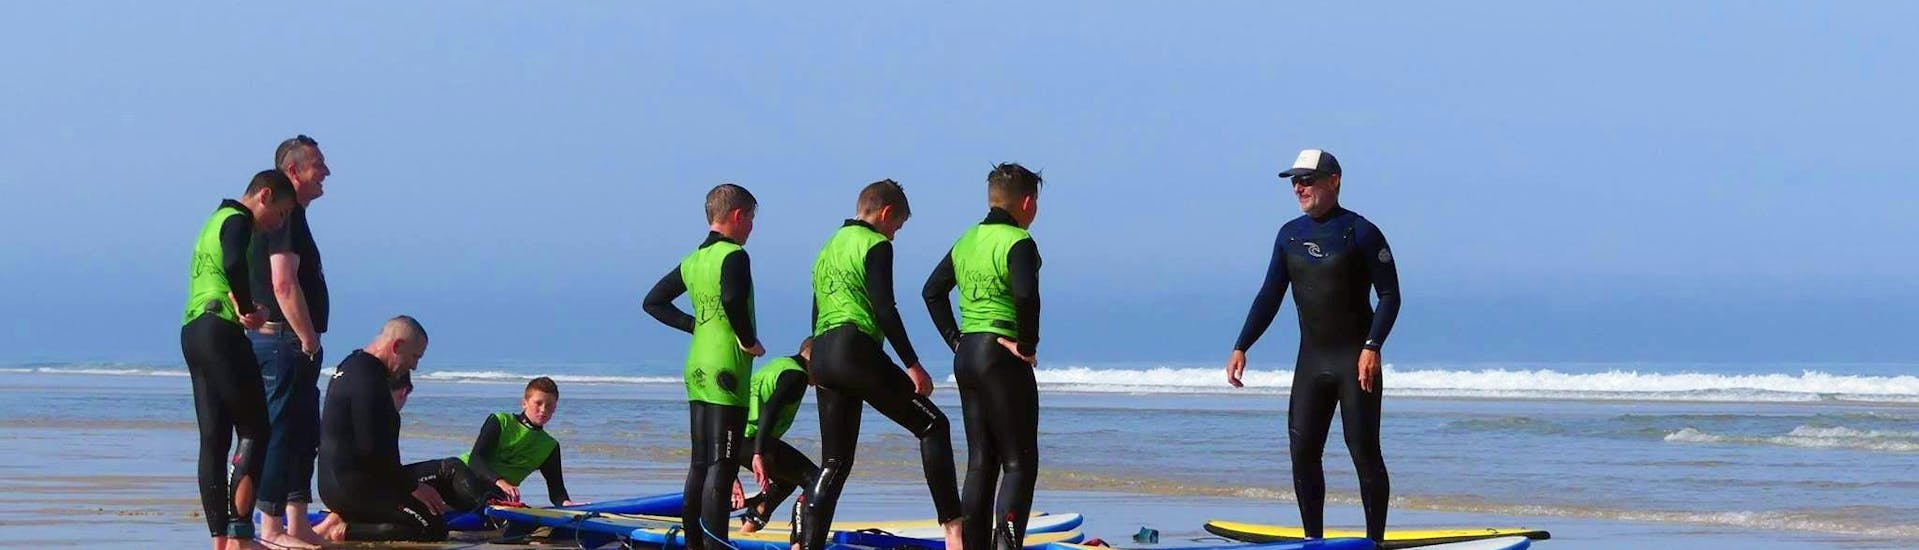 Les surfeurs se préparent pour leur cours de surf (dès 9 ans) sur la plage Sud à Messanges avec Messanges Surf School.